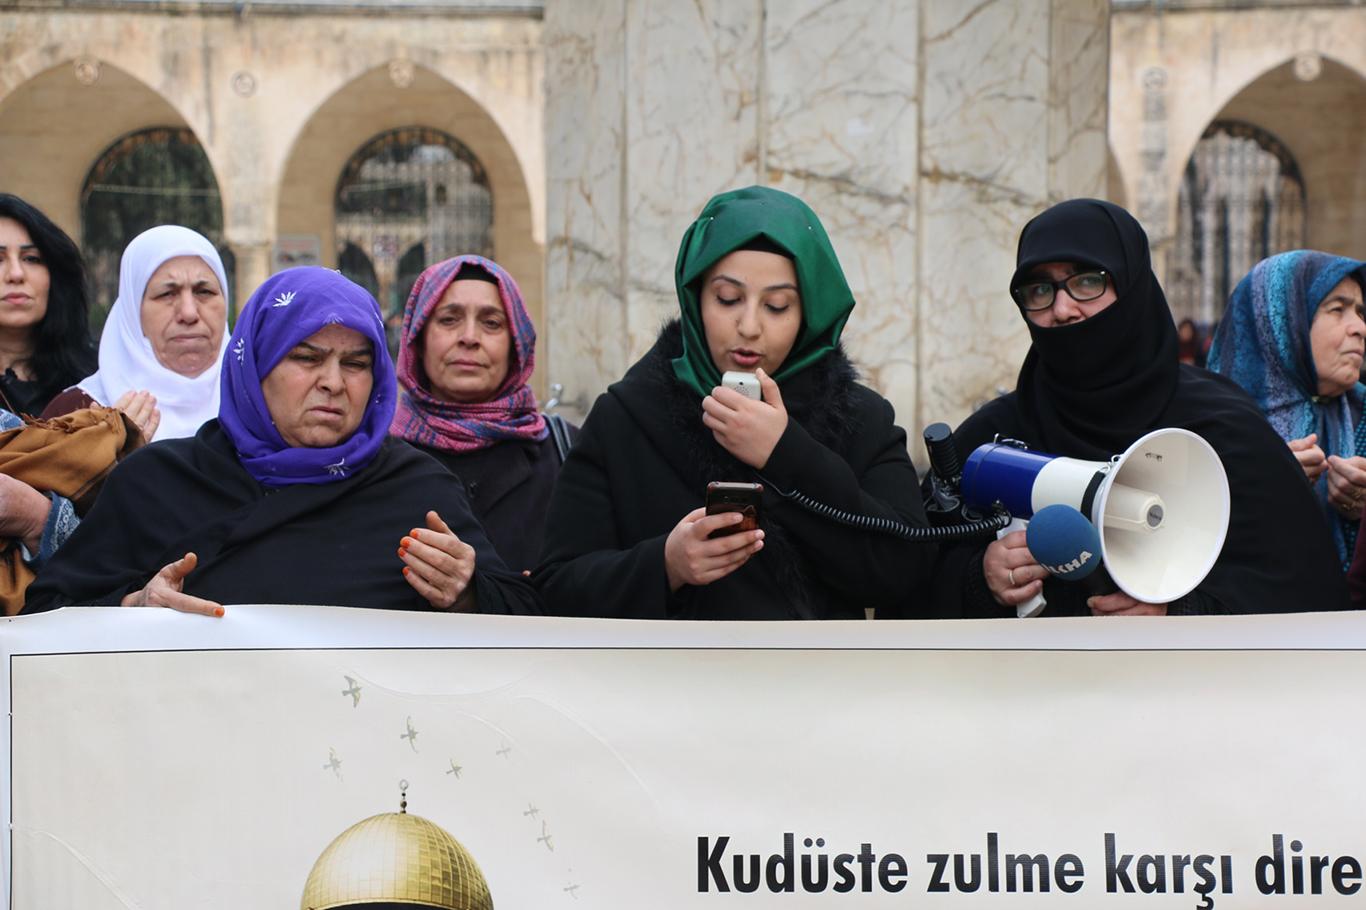 Kudüs Anneleri Platformu: Müslümanların kalbi Kudüs’te ve Mescid-i Aksa’da atmaktadır